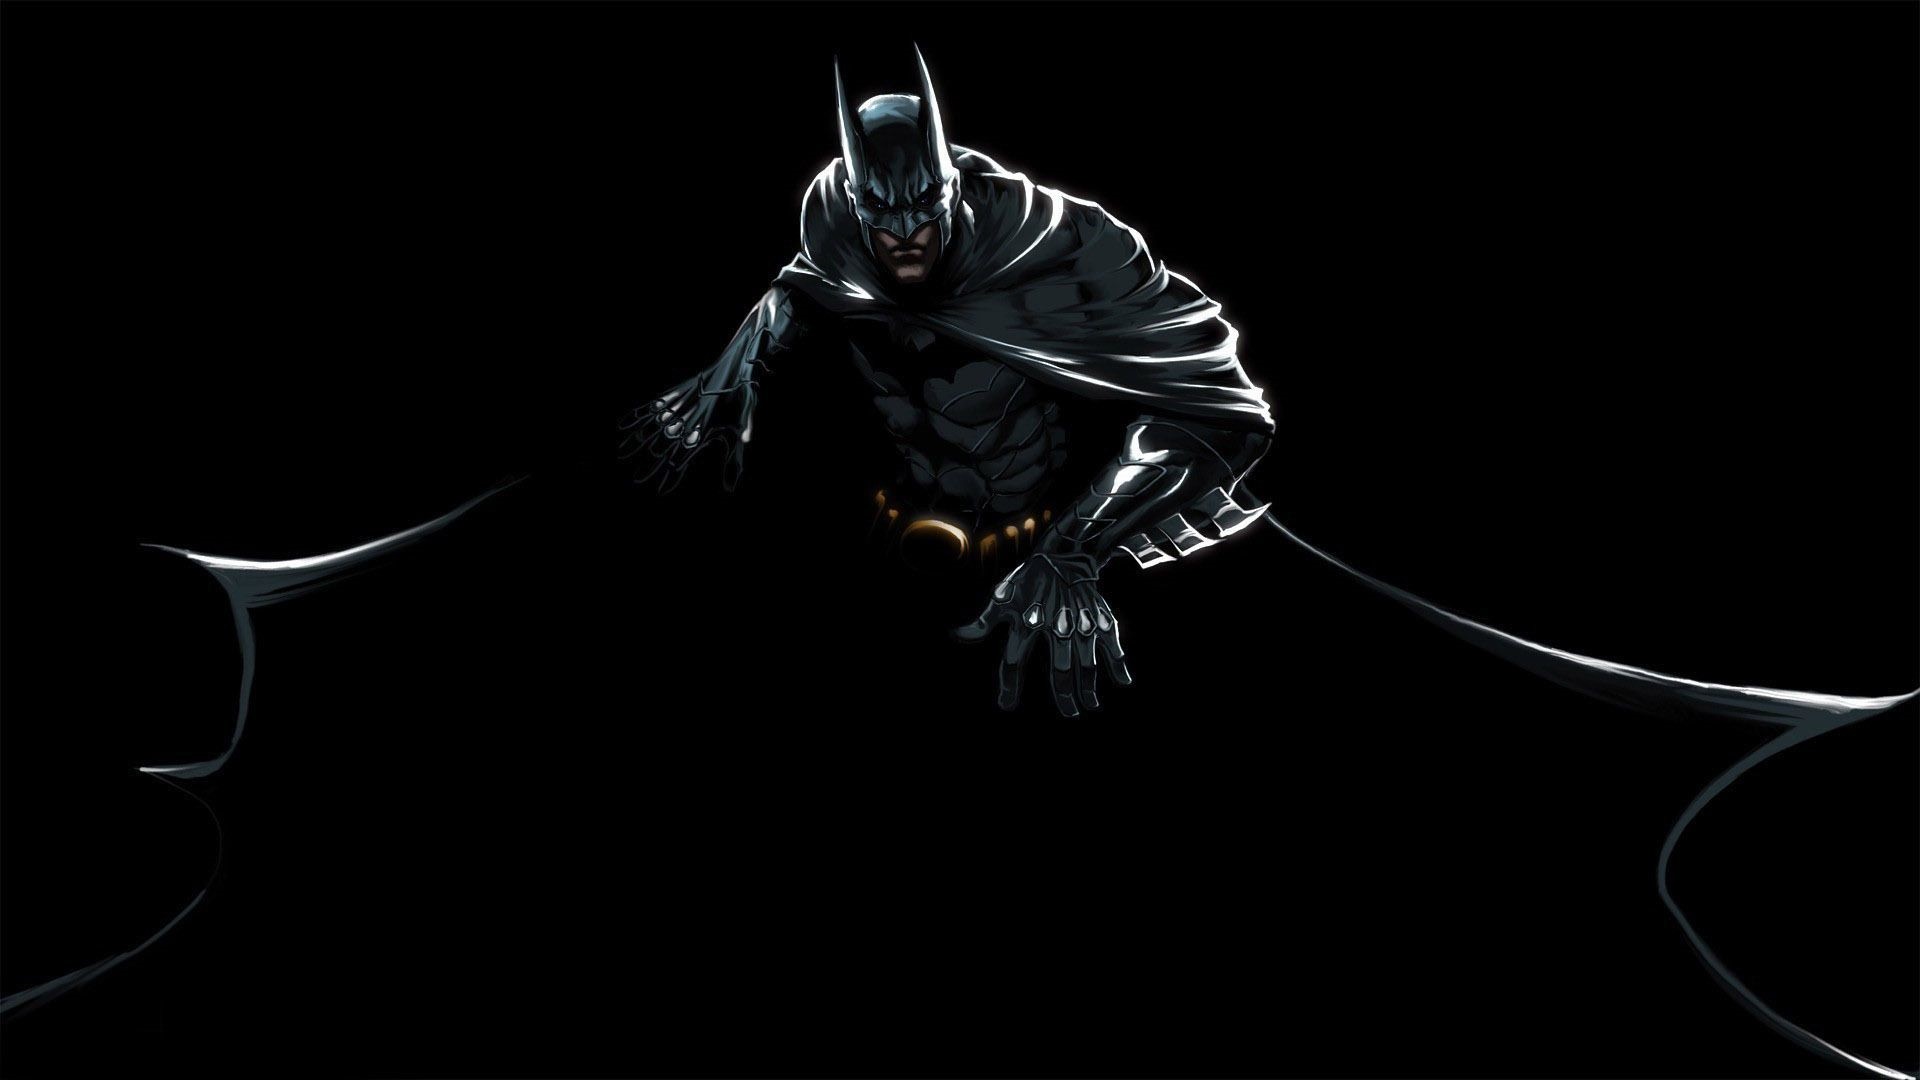 Batman 8K Wallpaper #4.2212